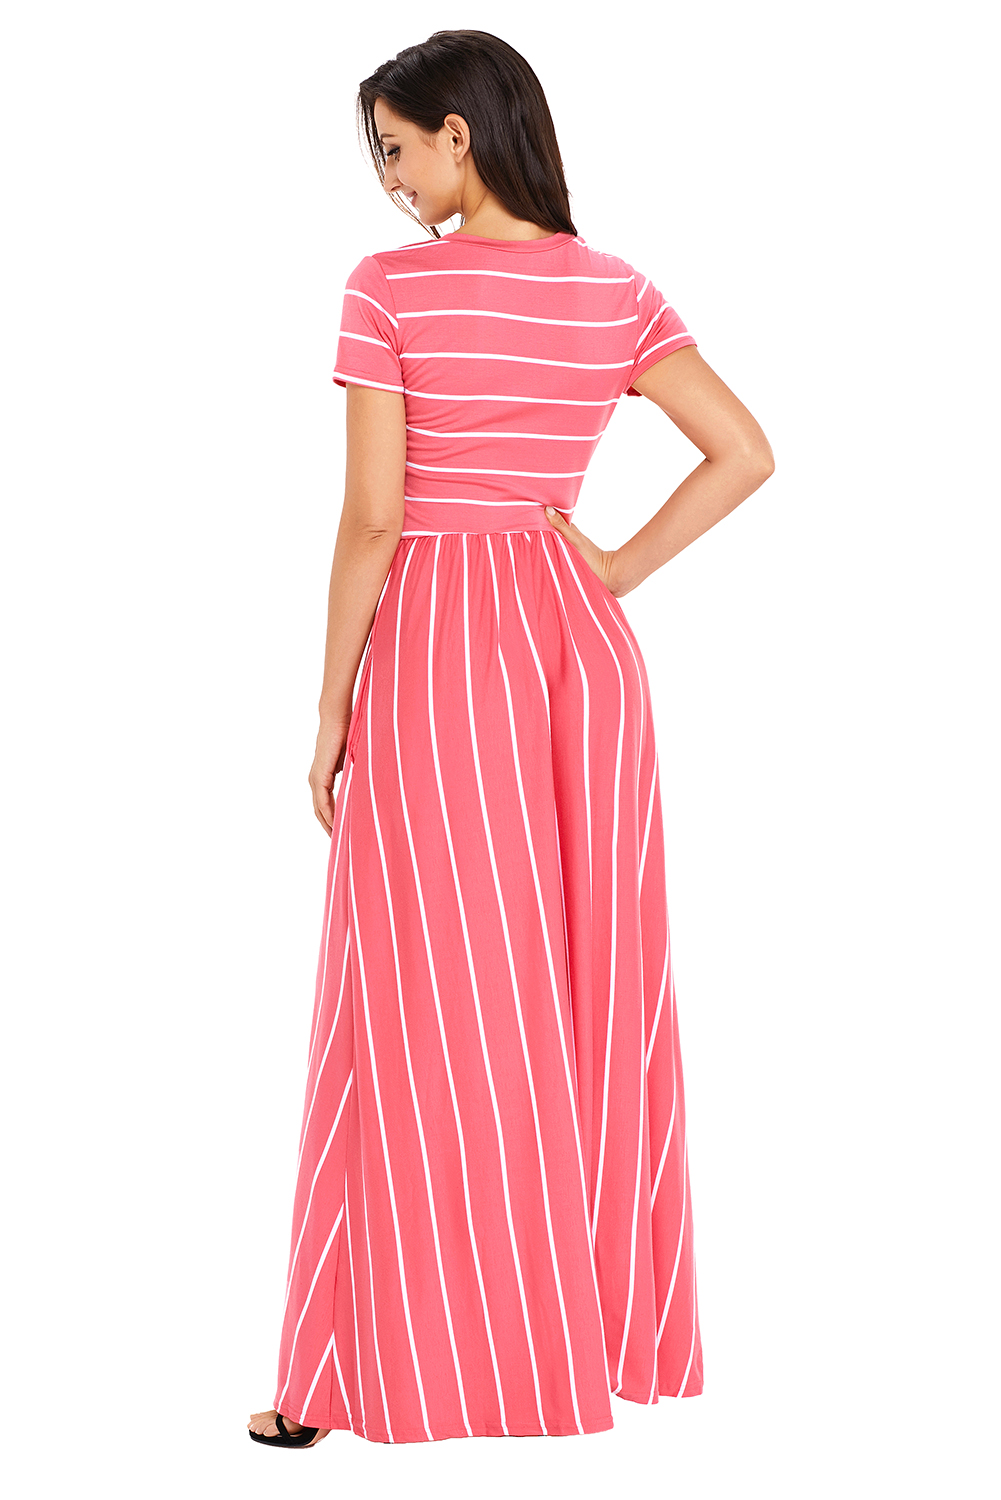 Ladies Maxi Striped Dress 